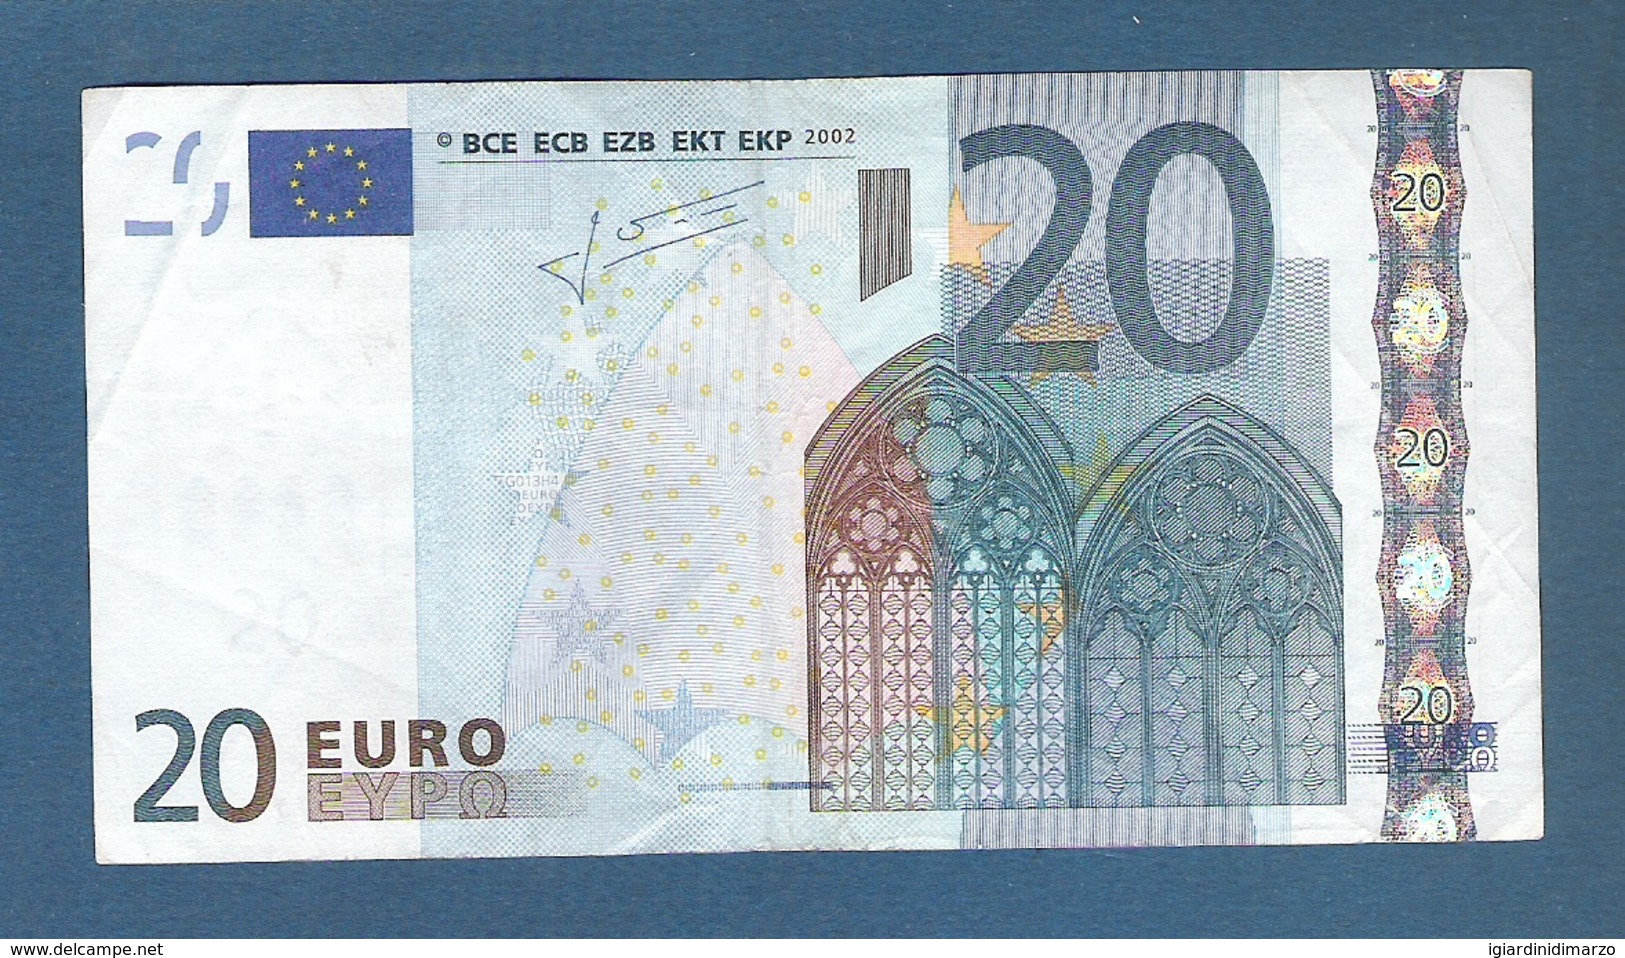 EURO - CIPRO - 2002 - BANCONOTA DA 20 EURO TRICHET SERIE G (G013H4) - CIRCOLATA-CIRCULATED - IN BUONE CONDIZIONI. - 20 Euro